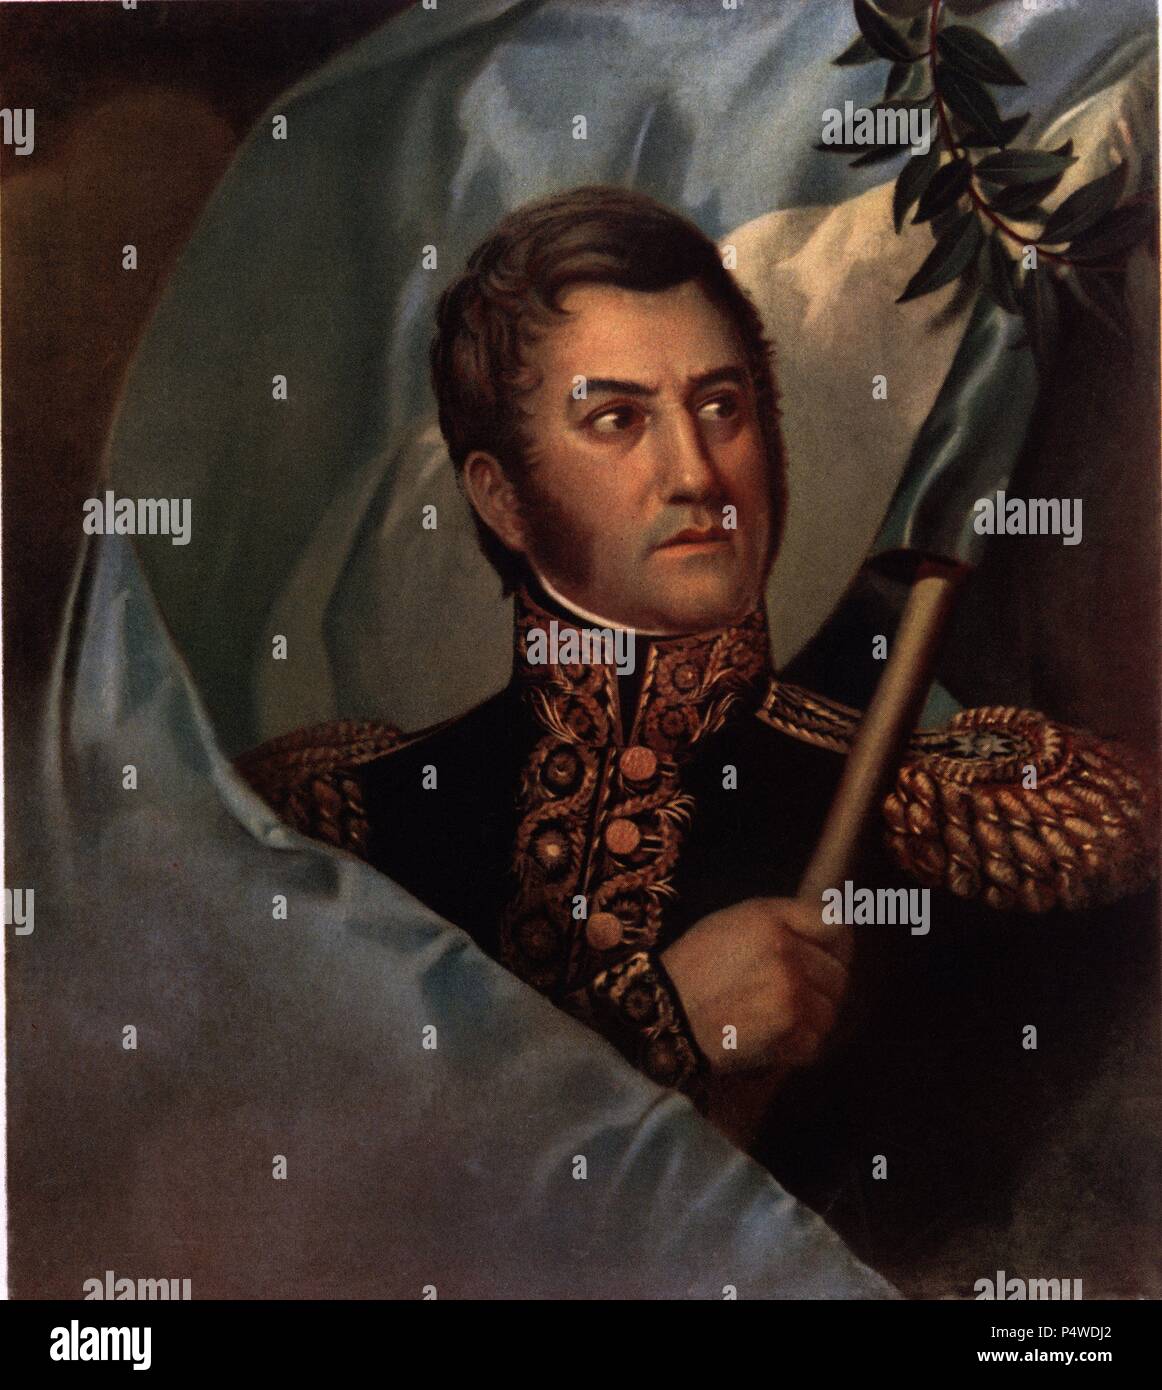 San Martín, José de 'el Libertador' (1778-1850). Militar argentino con destacada presencia en otros países sudamericanos. Stock Photo